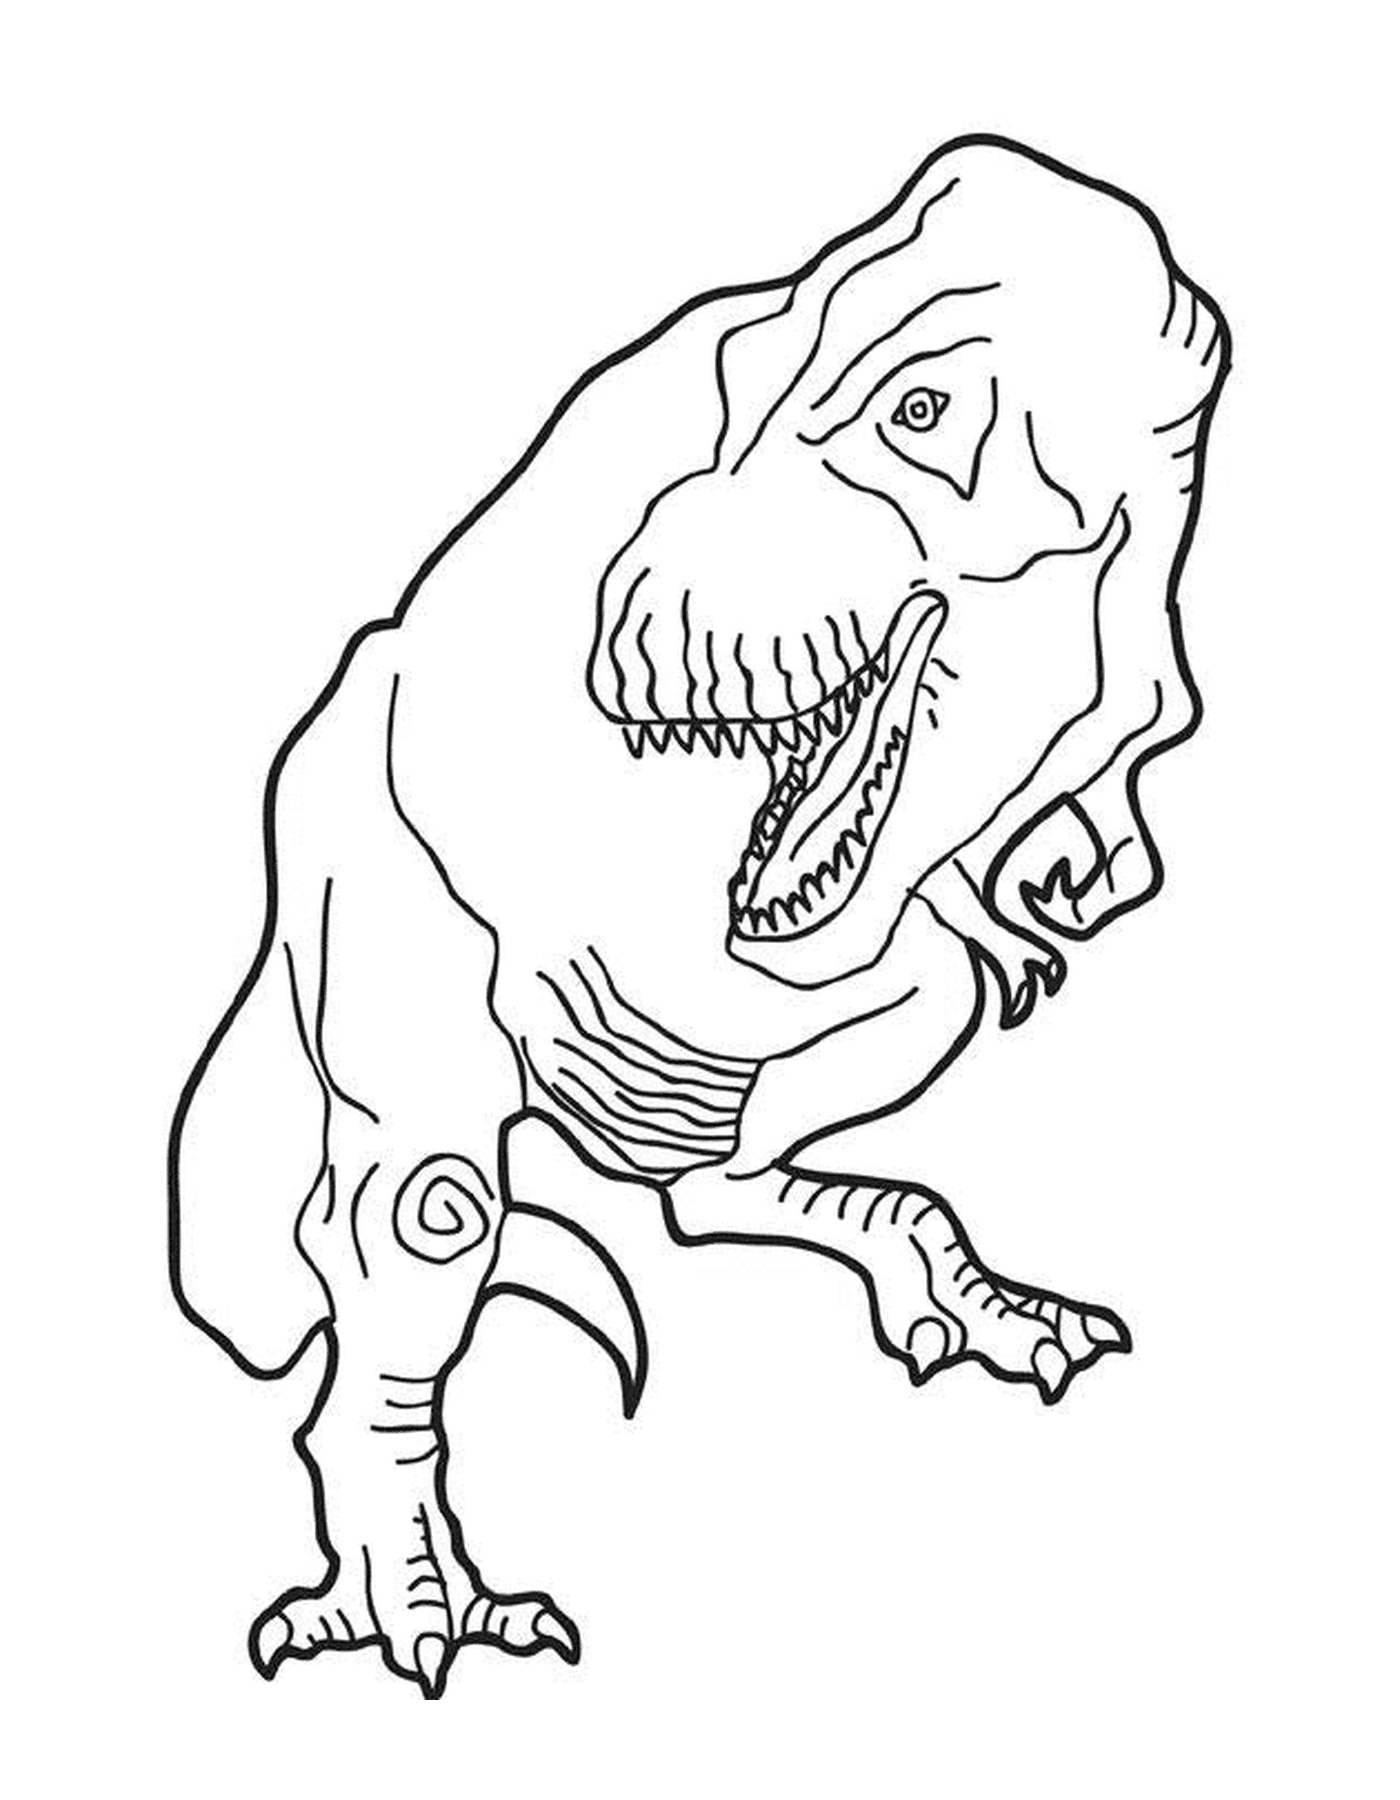   Un tyrannosaure debout 